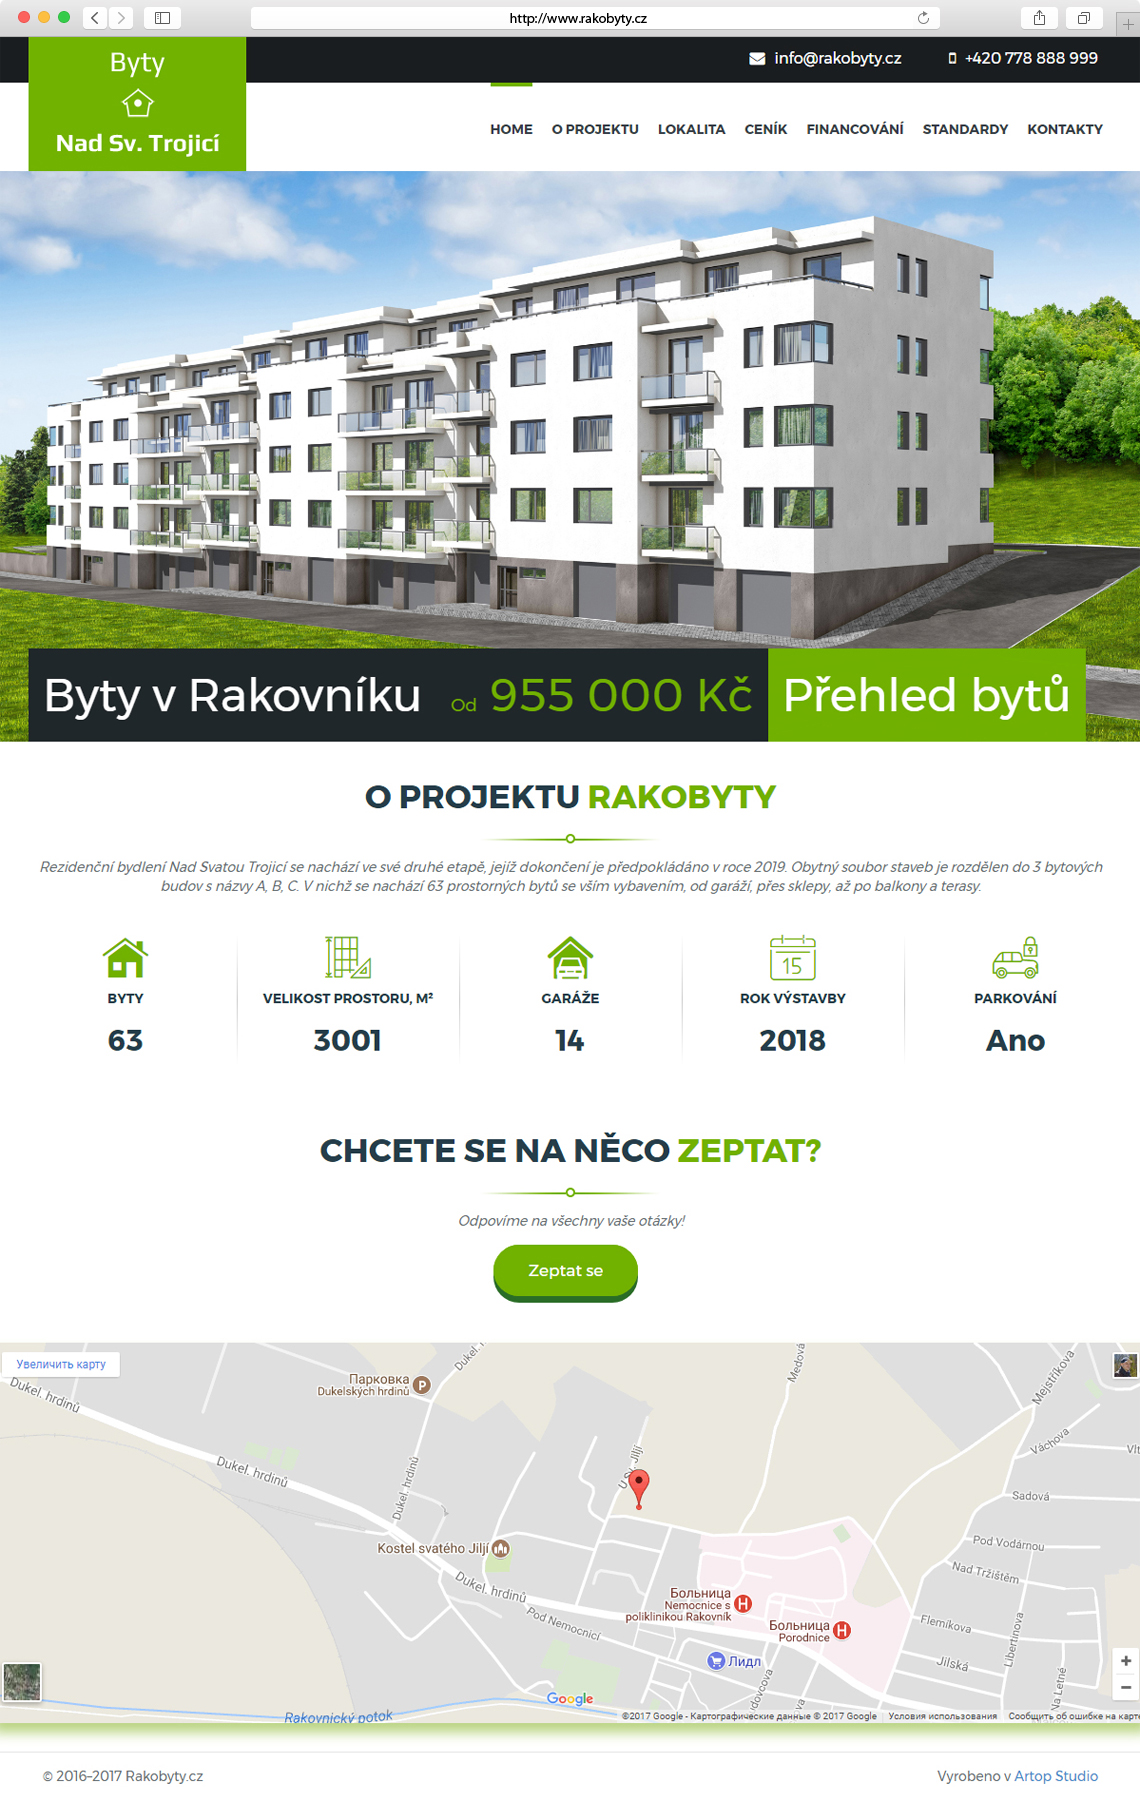 Homepage www.rakobyty.cz